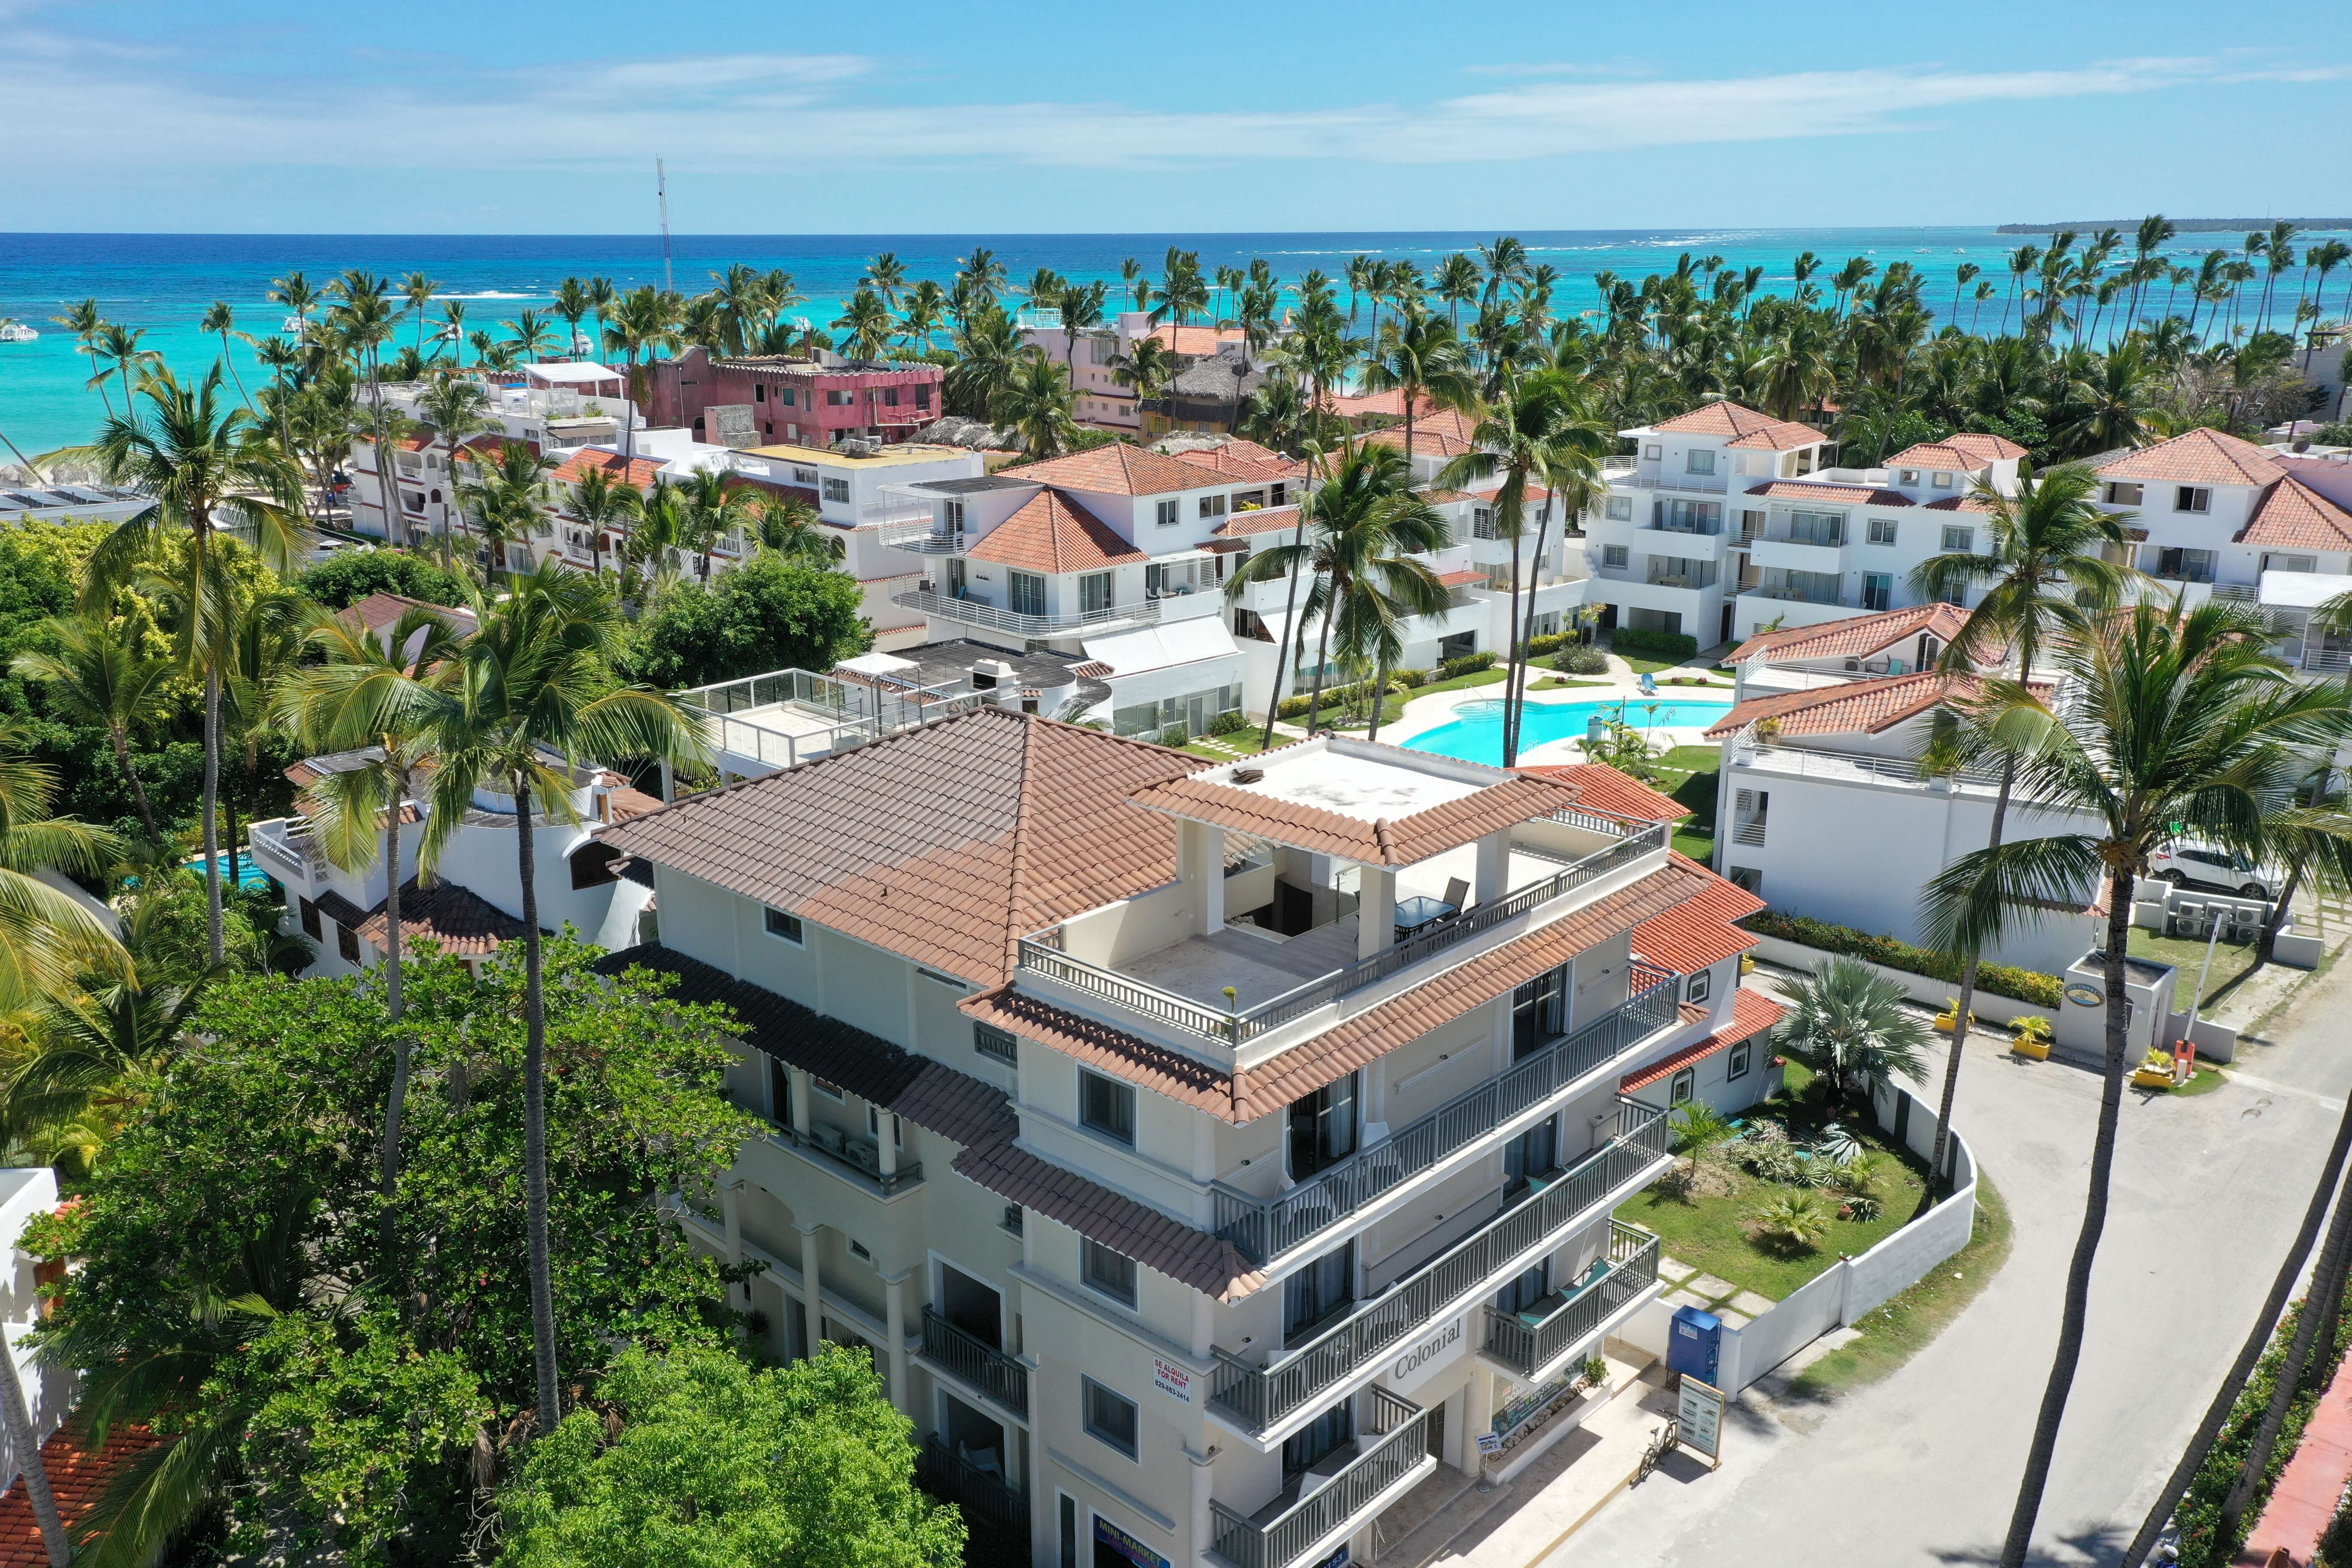 Apart Hotel En Venta En La Playa Con Excelente Rentabilidad, Excelente Oportunidad De Inversión. Los Corales. Bavaro. República Dominicana